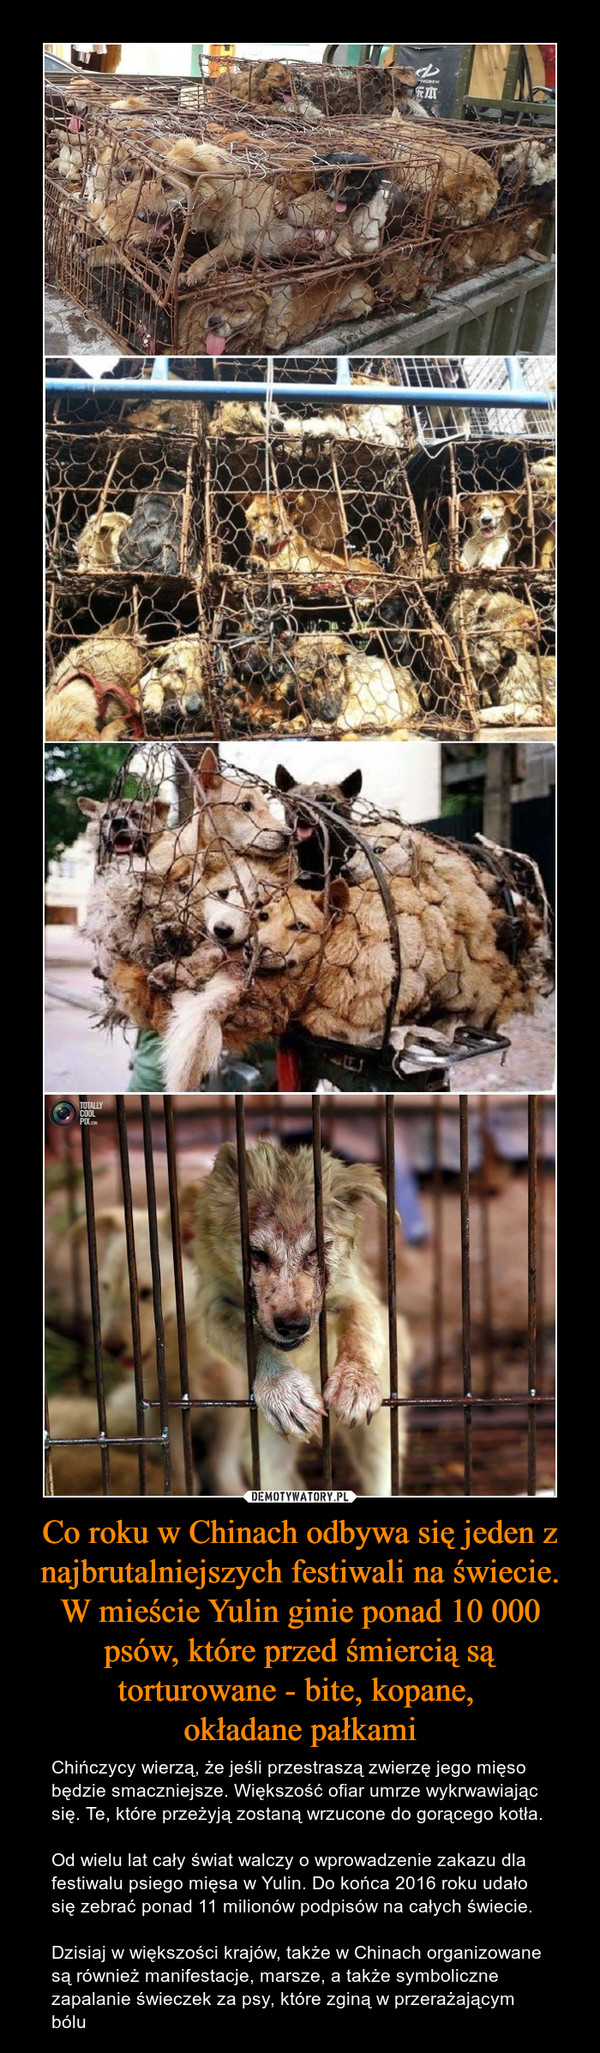 Co roku w Chinach odbywa się jeden z najbrutalniejszych festiwali na świecie. W mieście Yulin ginie ponad 10 000 psów, które przed śmiercią są torturowane - bite, kopane, okładane pałkami – Chińczycy wierzą, że jeśli przestraszą zwierzę jego mięso będzie smaczniejsze. Większość ofiar umrze wykrwawiając się. Te, które przeżyją zostaną wrzucone do gorącego kotła.Od wielu lat cały świat walczy o wprowadzenie zakazu dla festiwalu psiego mięsa w Yulin. Do końca 2016 roku udało się zebrać ponad 11 milionów podpisów na całych świecie. Dzisiaj w większości krajów, także w Chinach organizowane są również manifestacje, marsze, a także symboliczne zapalanie świeczek za psy, które zginą w przerażającym bólu 